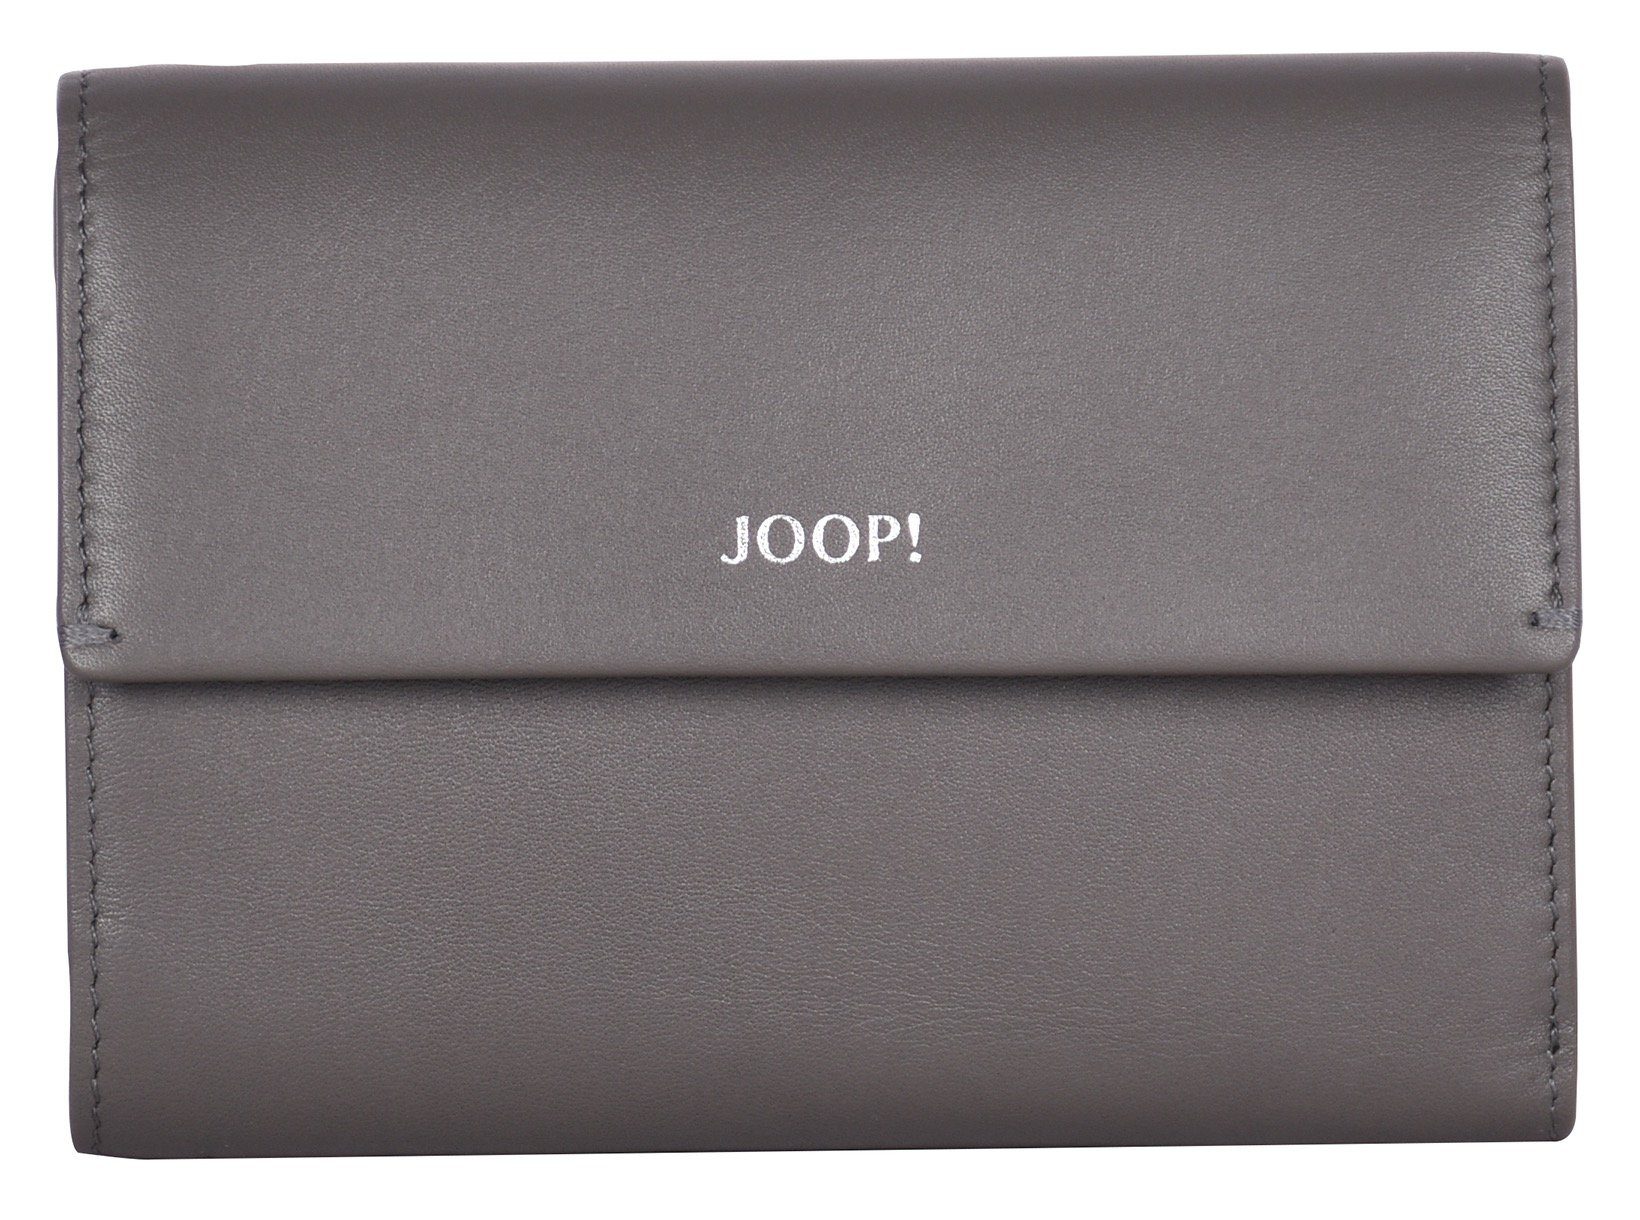 Joop! in Geldbörse schlichtem 1.0 darkgrey cosma Design sofisticato purse mh10f,